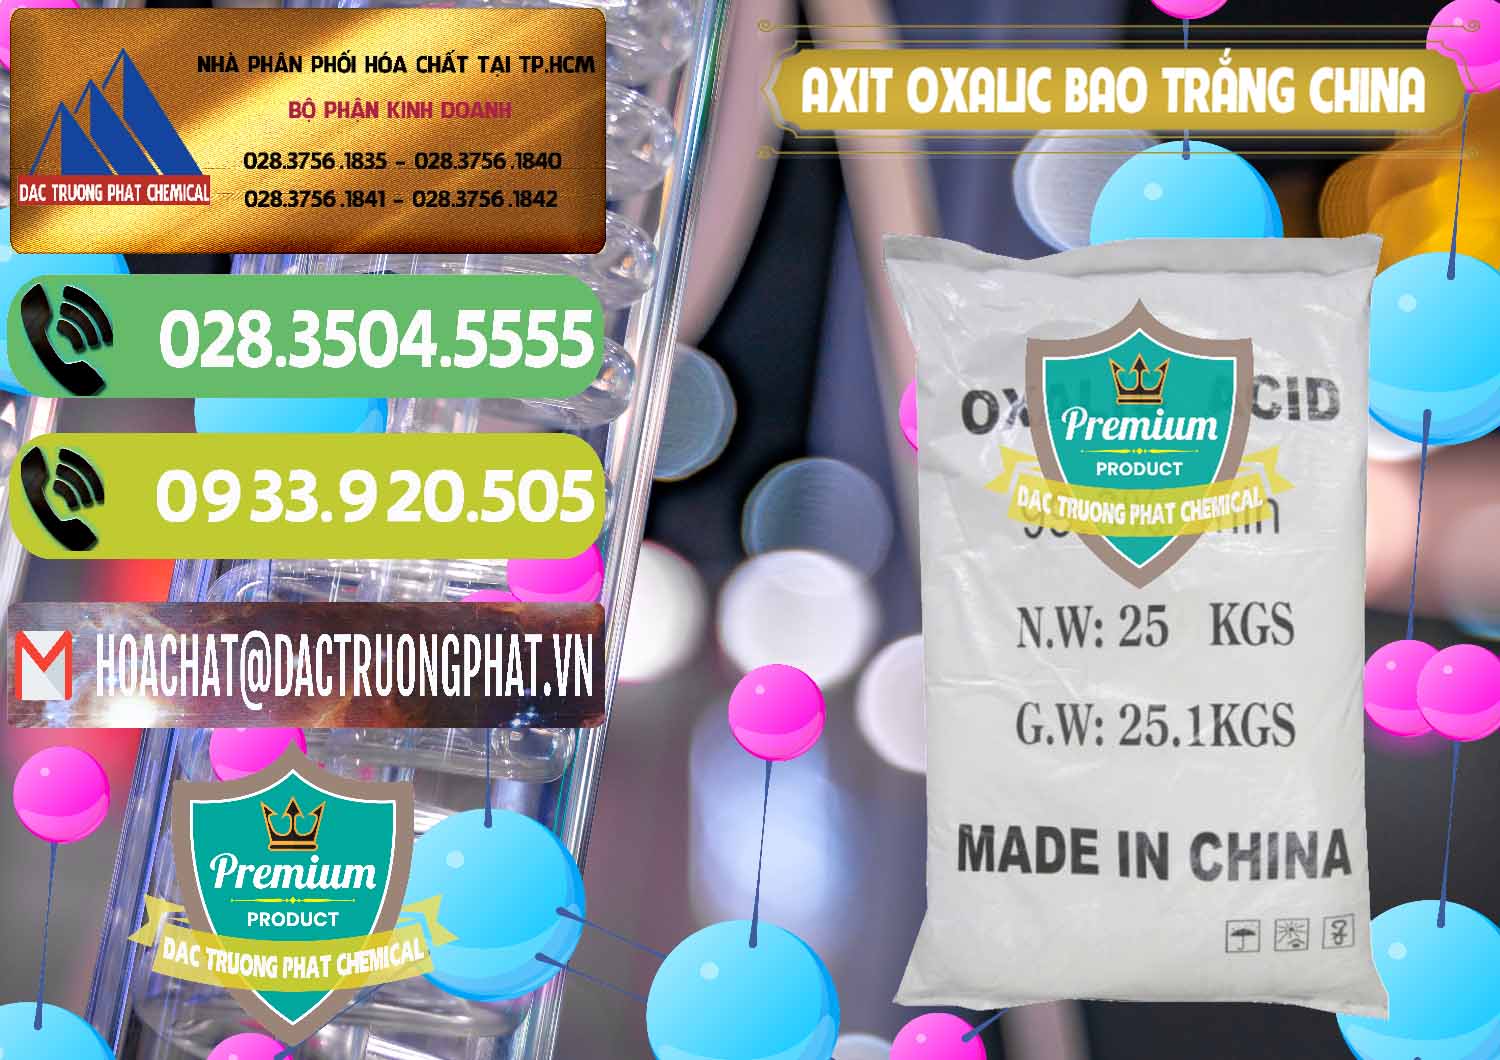 Công ty chuyên bán ( cung ứng ) Acid Oxalic – Axit Oxalic 99.6% Bao Trắng Trung Quốc China - 0270 - Nơi chuyên phân phối và cung ứng hóa chất tại TP.HCM - hoachatmientay.vn